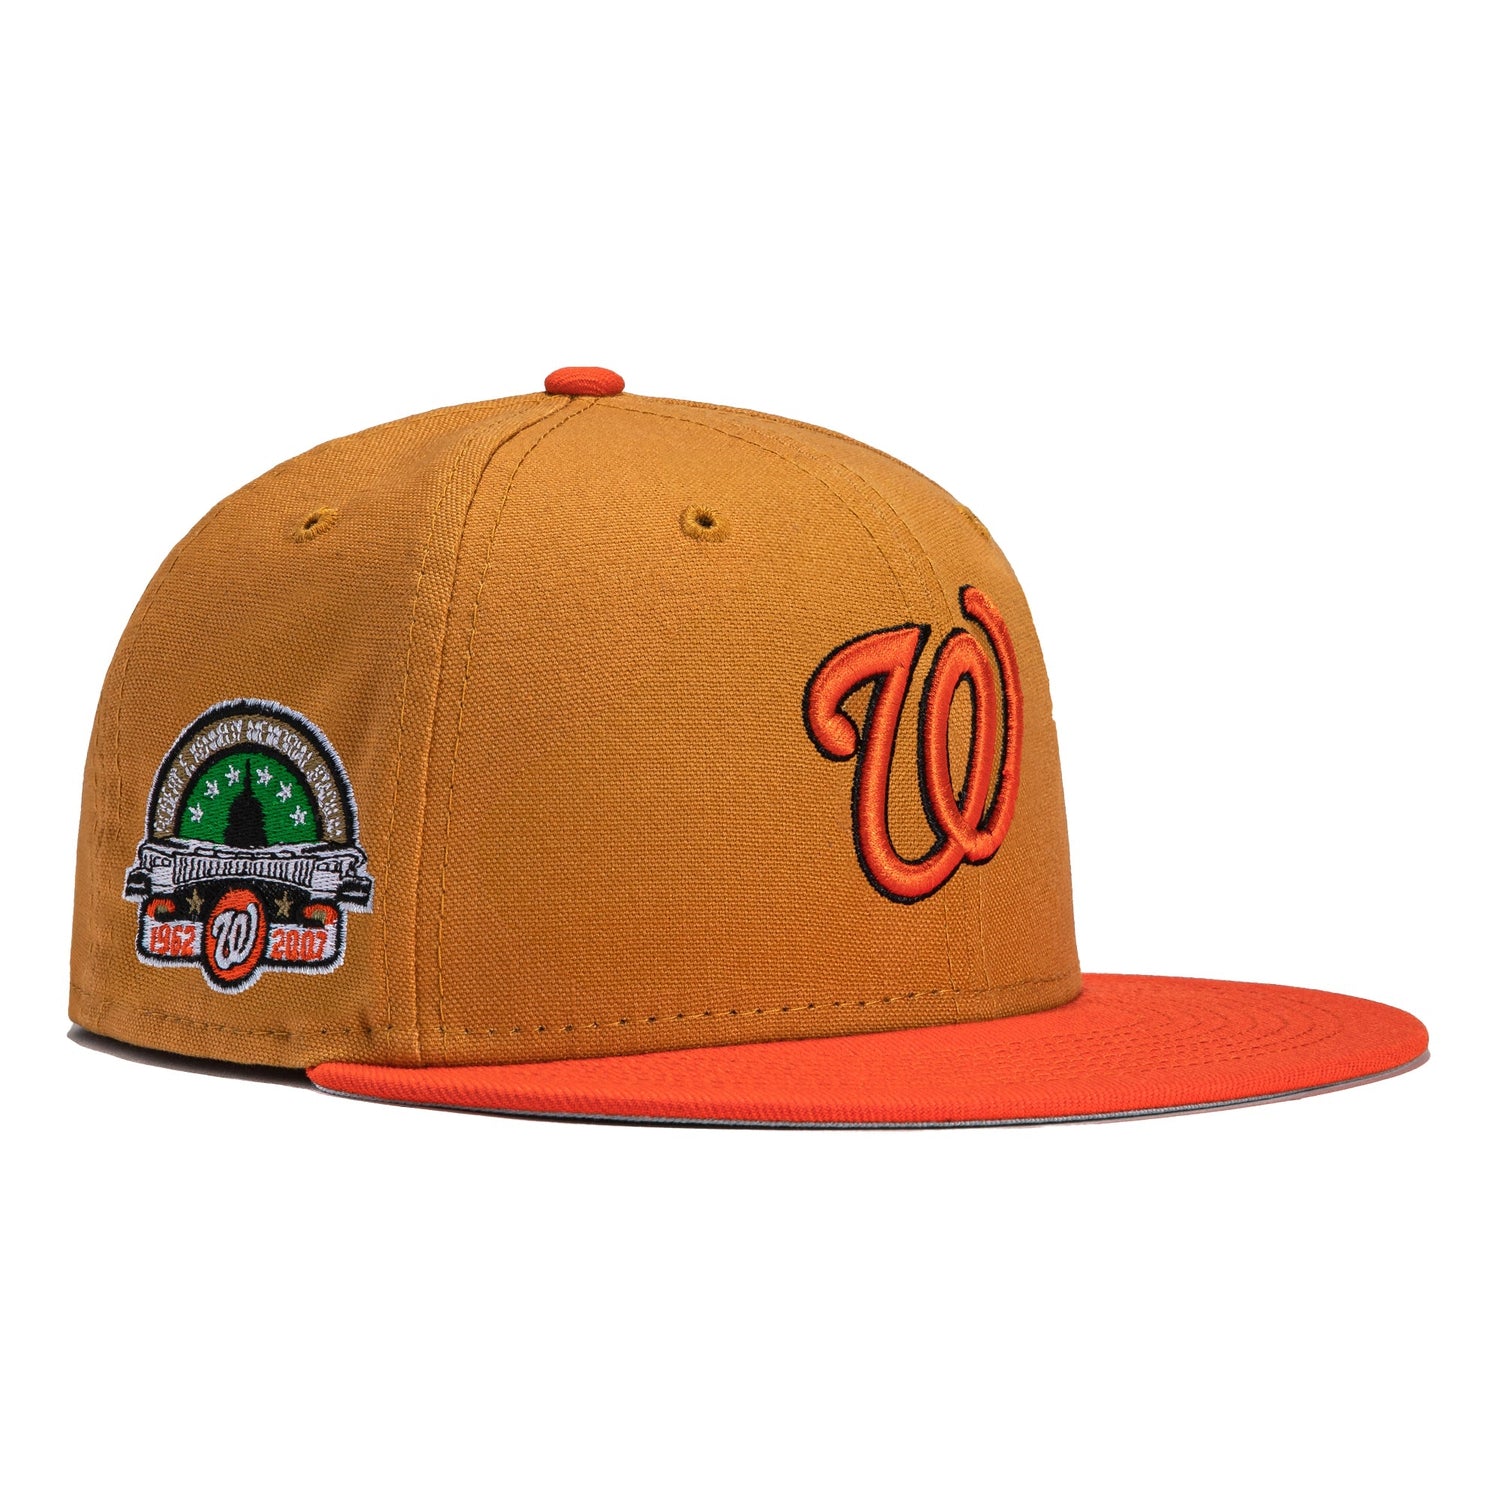 Washington Nationals New Era 59FIFTY Fitted Hat - Khaki